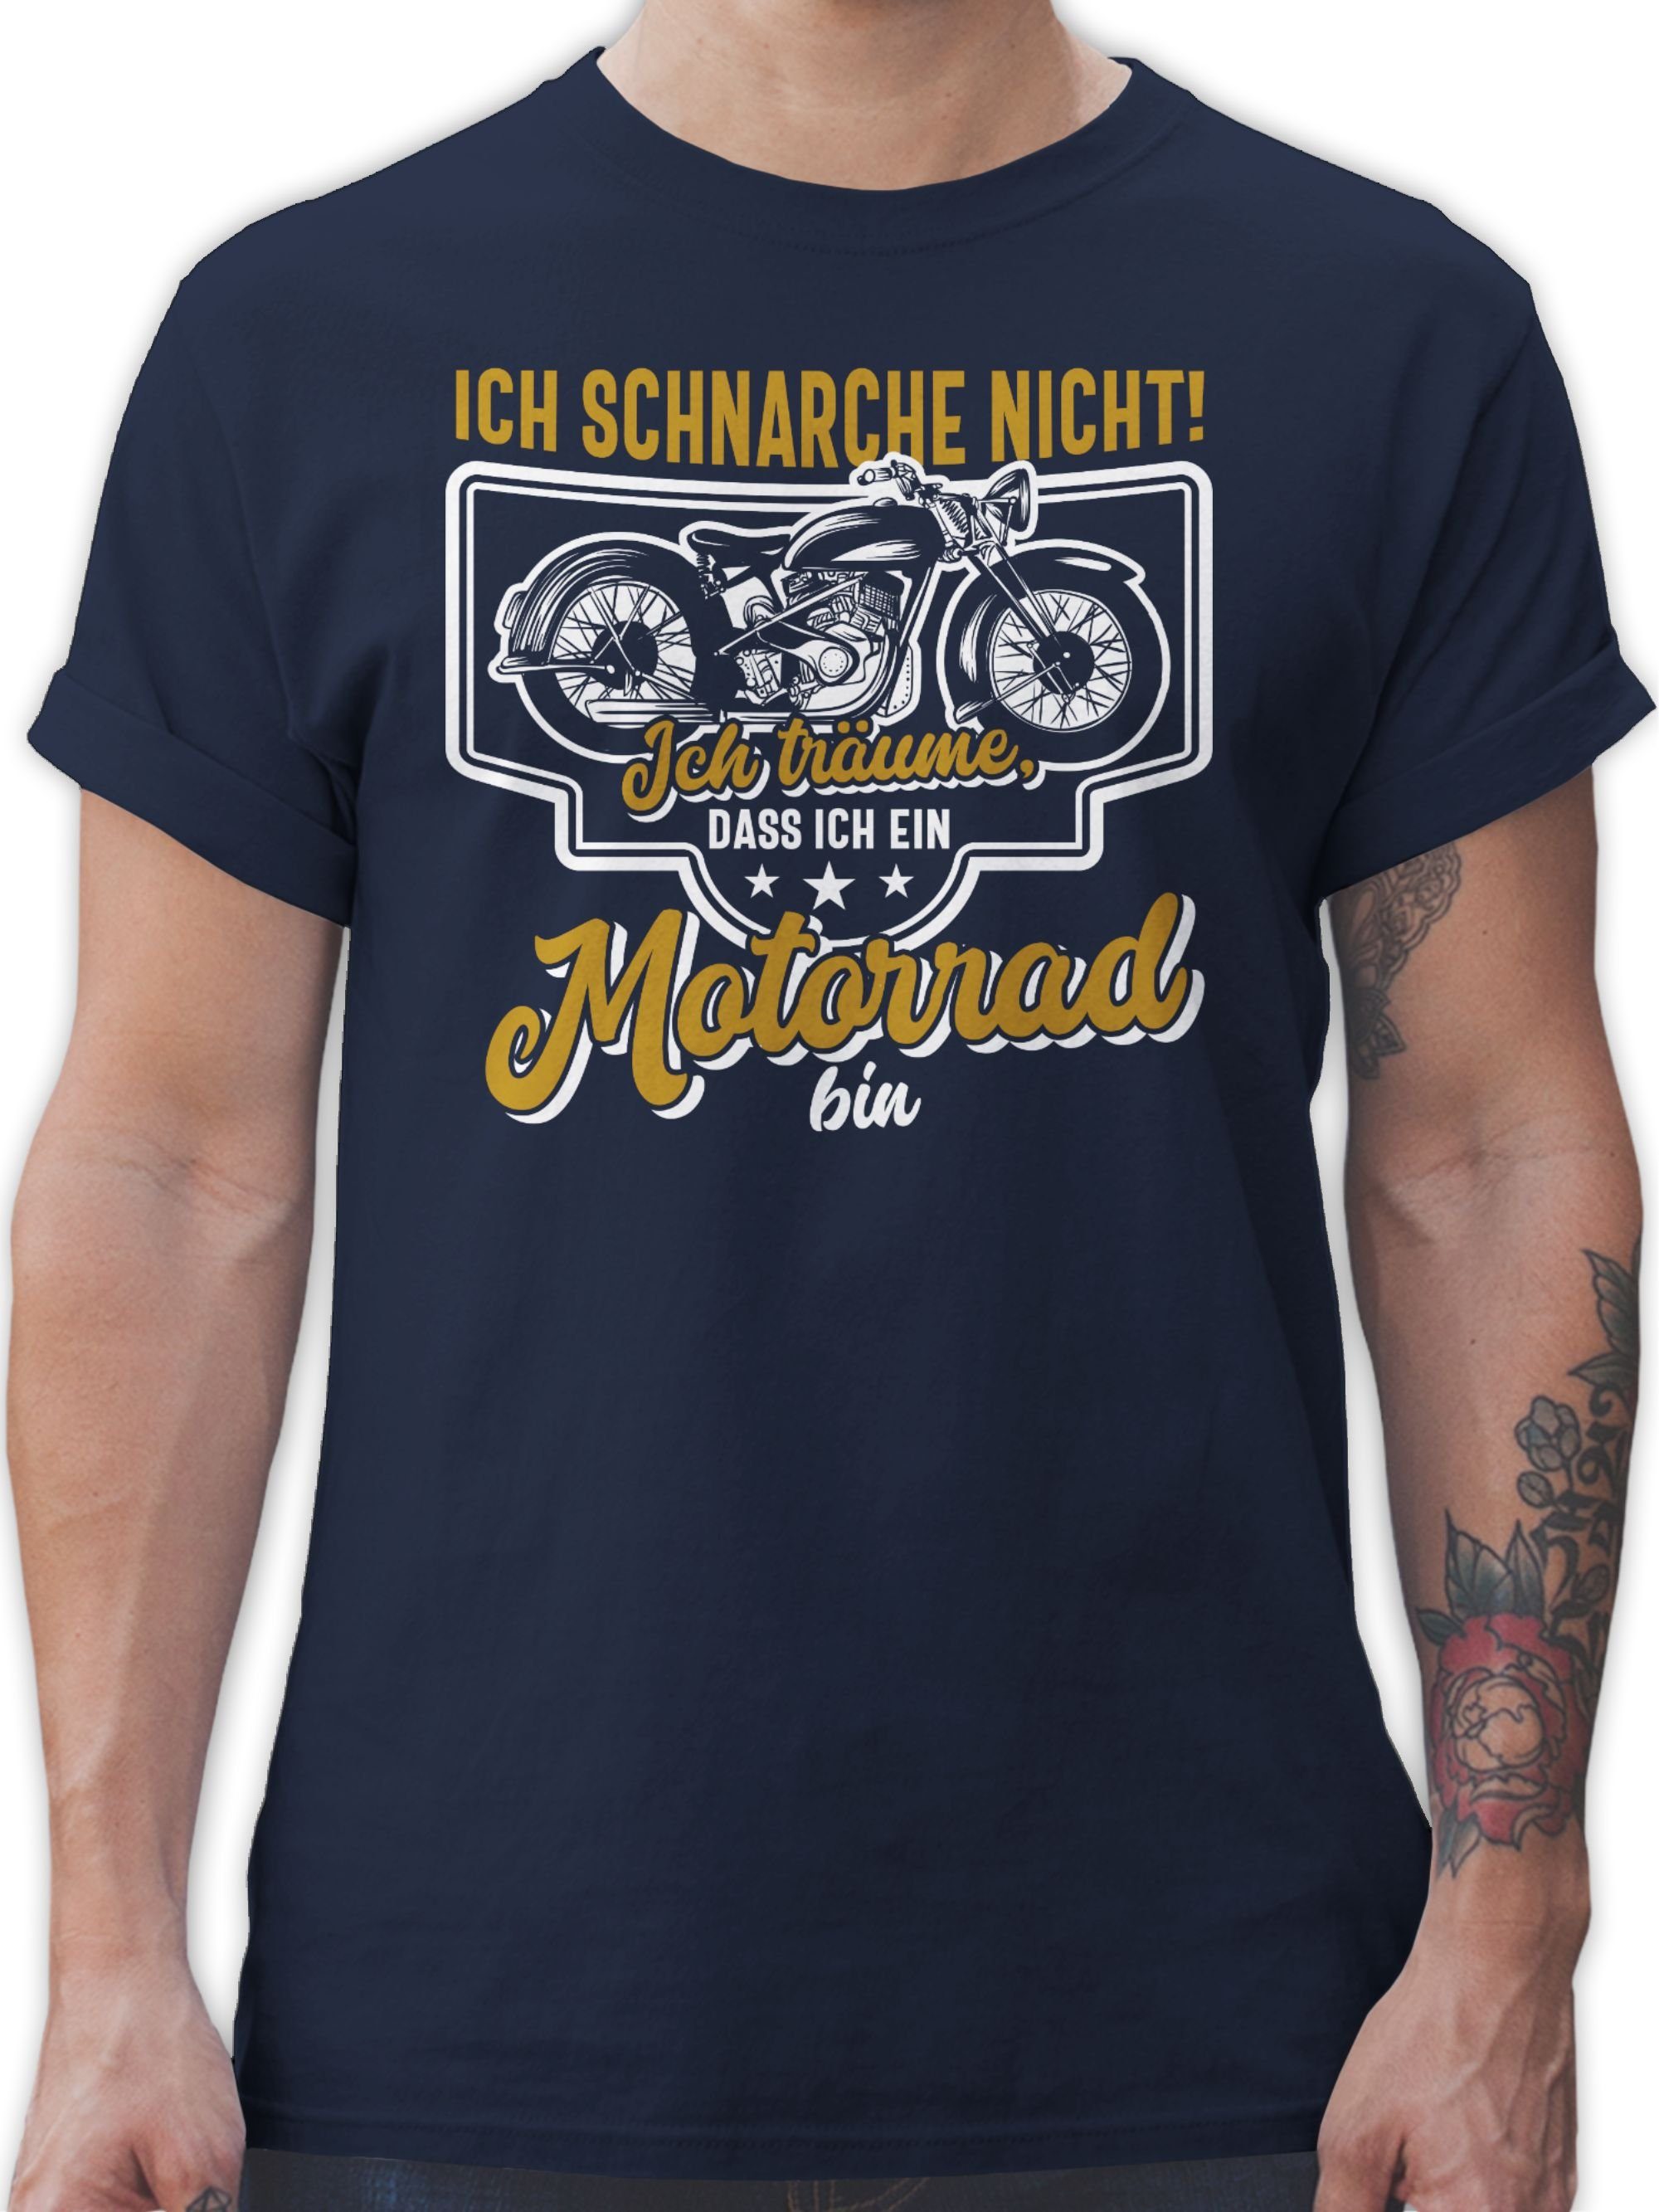 Shirtracer T-Shirt Ich schnarche nicht ich träume dass ich ein Motorrad bin weiß bunt Motorrad Biker 2 Navy Blau